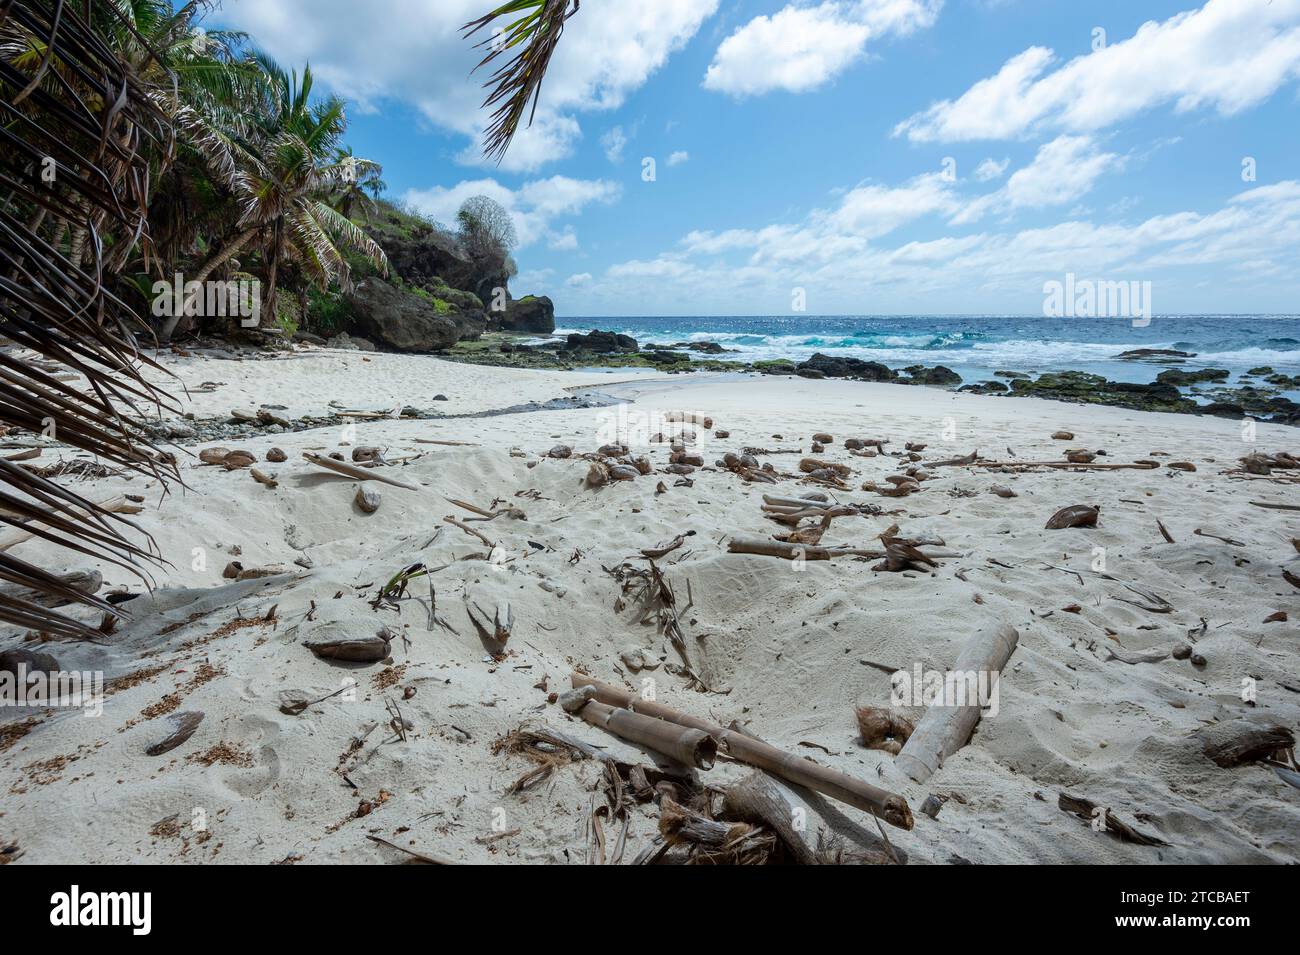 Turtle nest on Dolly Beach, a popular sandy deserted beach on Christmas Island, Australia Stock Photo